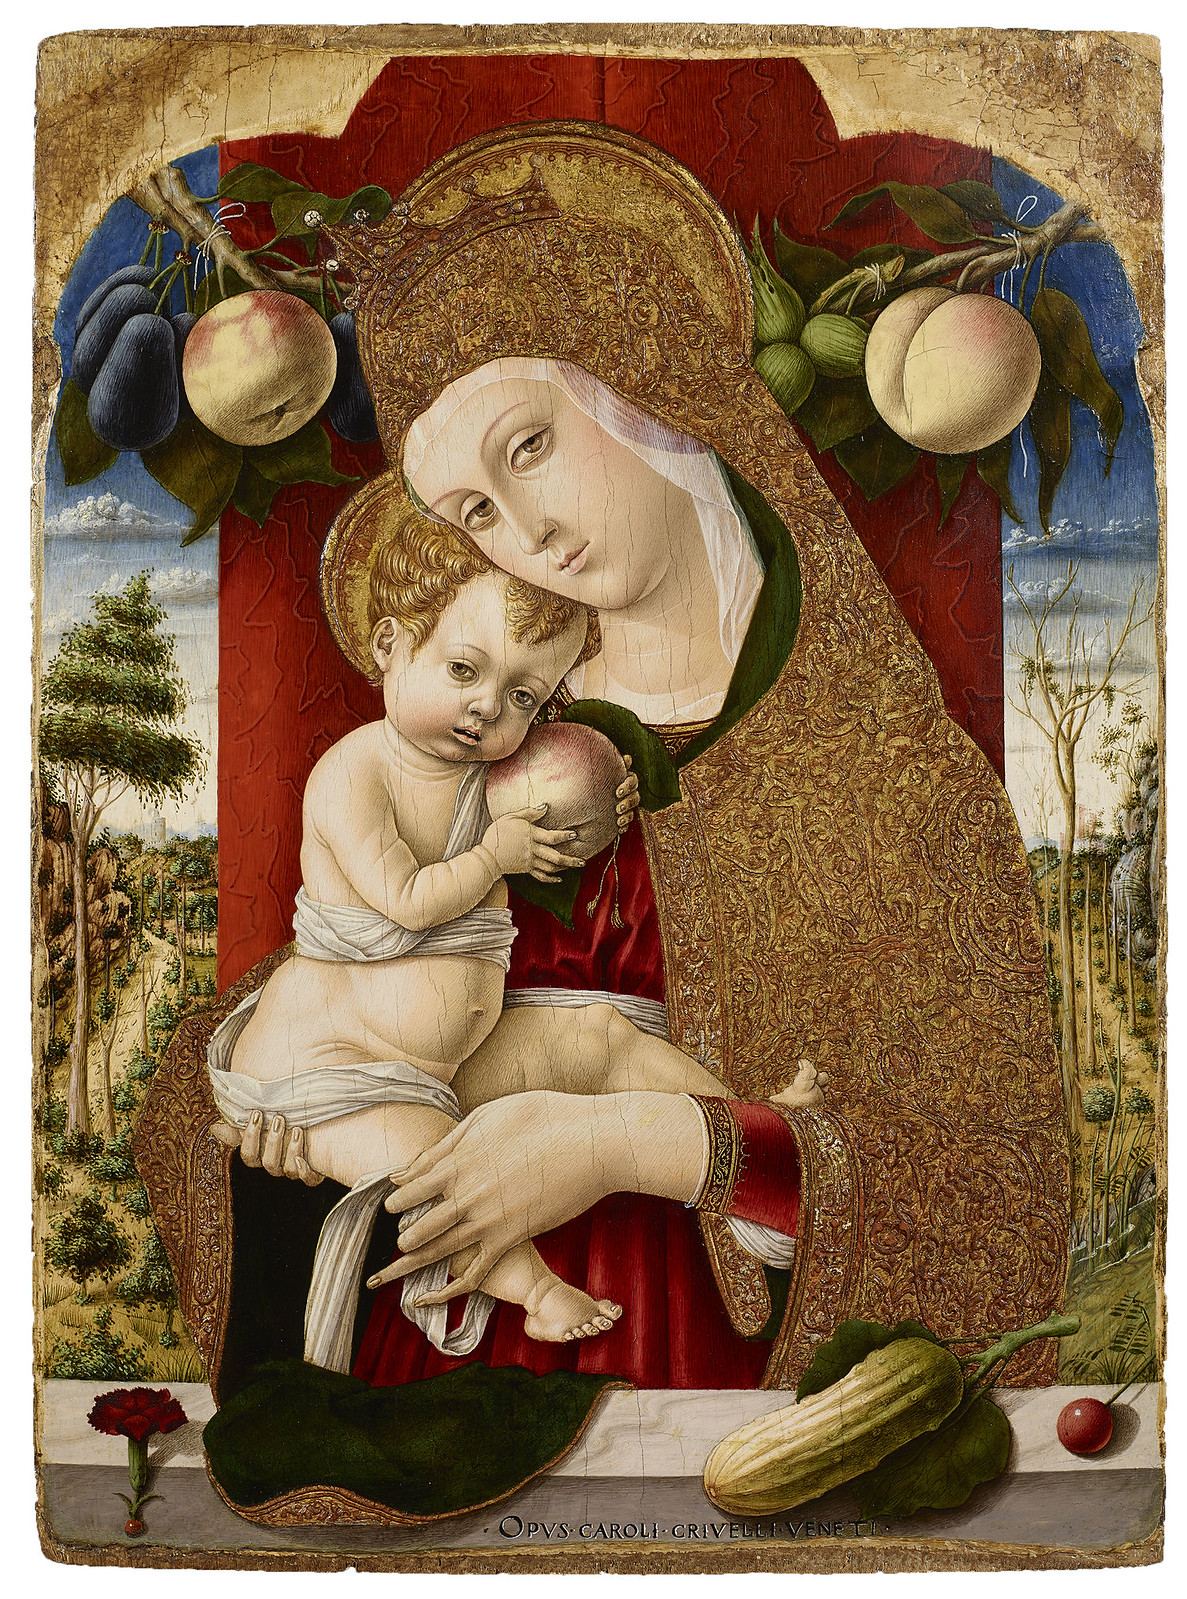 Bergamo, Accademia Carrara. Carlo Crivelli, Madonna and Child, 1482-83. Courtesy adicorbetta, Milano